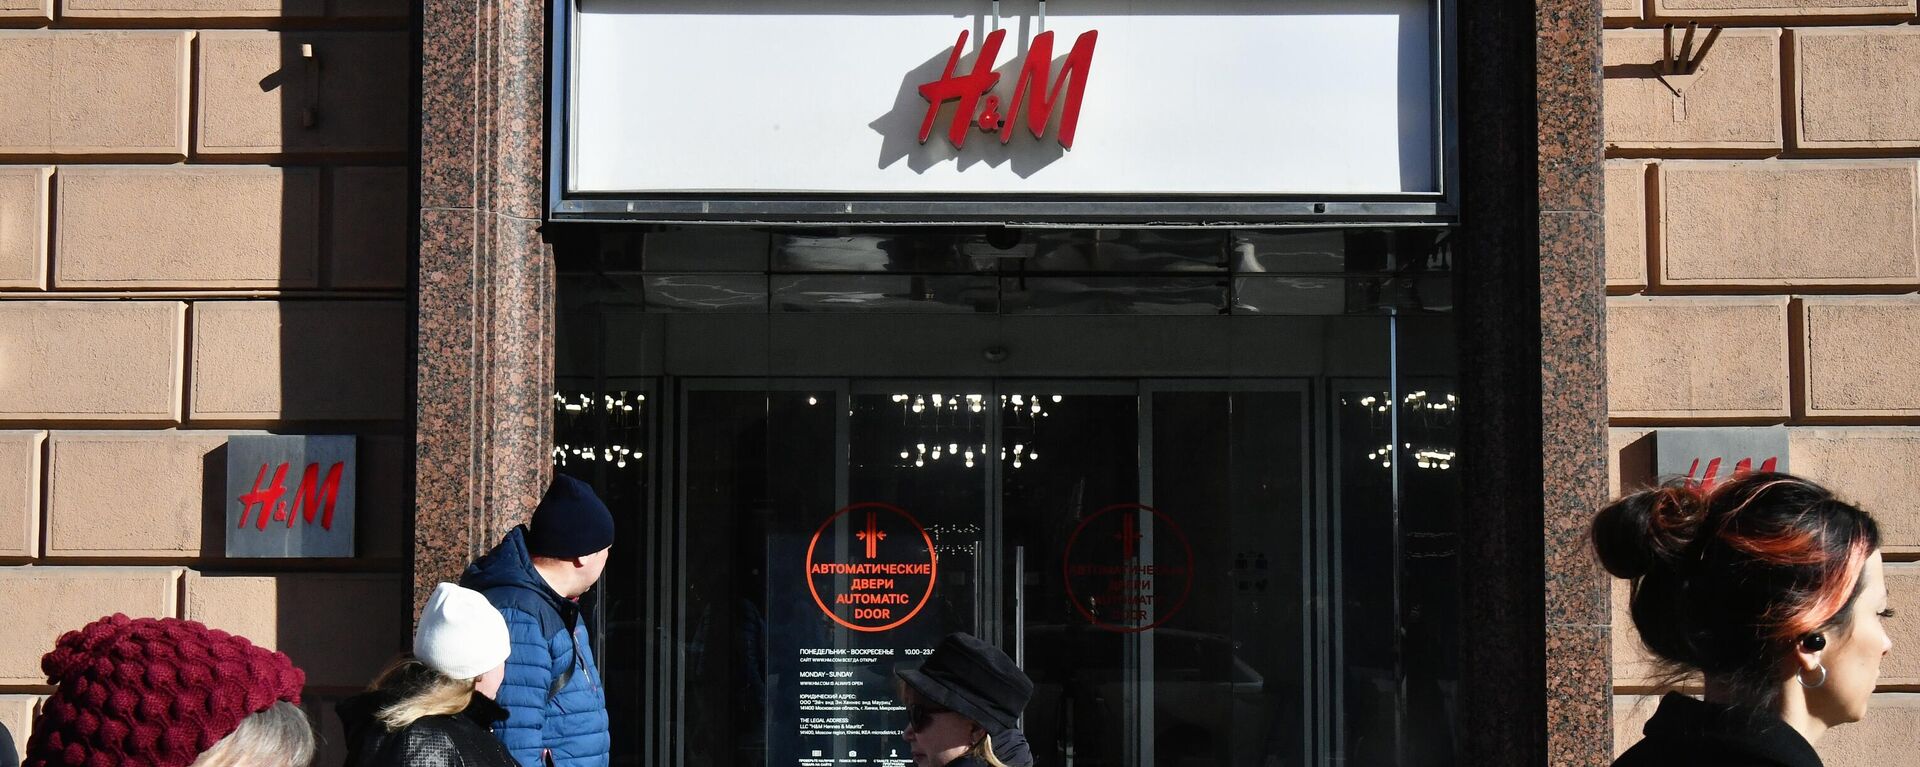 La marca de moda H&M suspendió ventas en Rusia - Sputnik Mundo, 1920, 06.03.2022